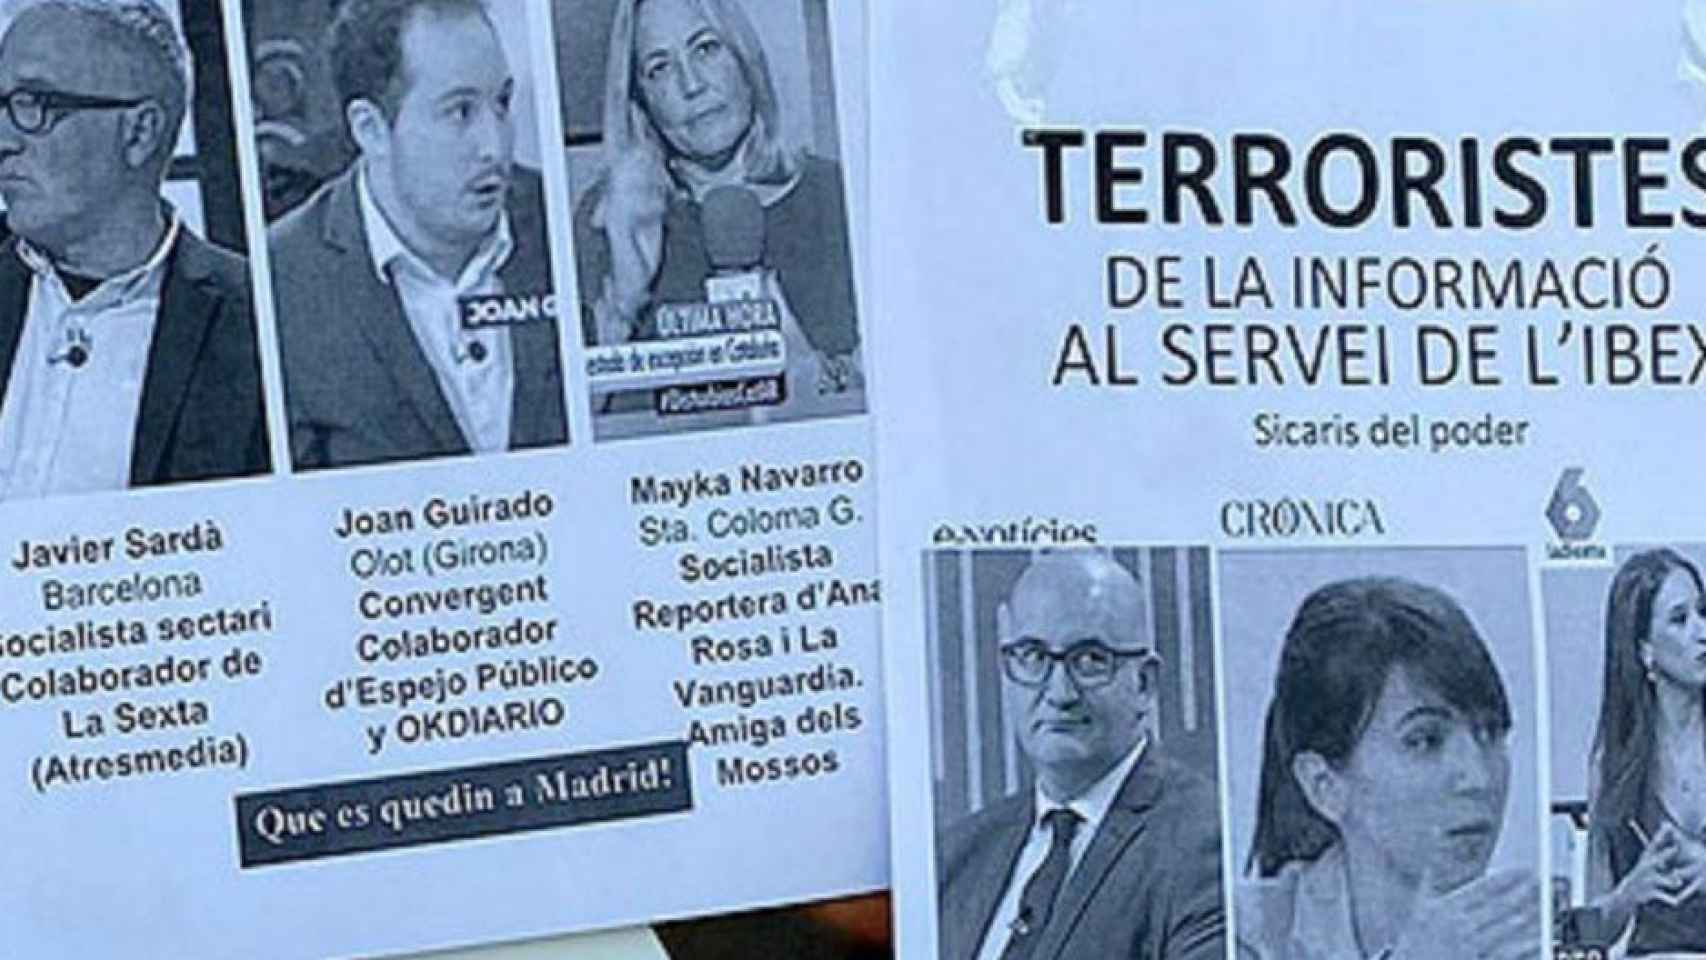 Carteles anónimos en los que tildan de terroristas de la información al servicio del Ibex a seis periodistas catalanes